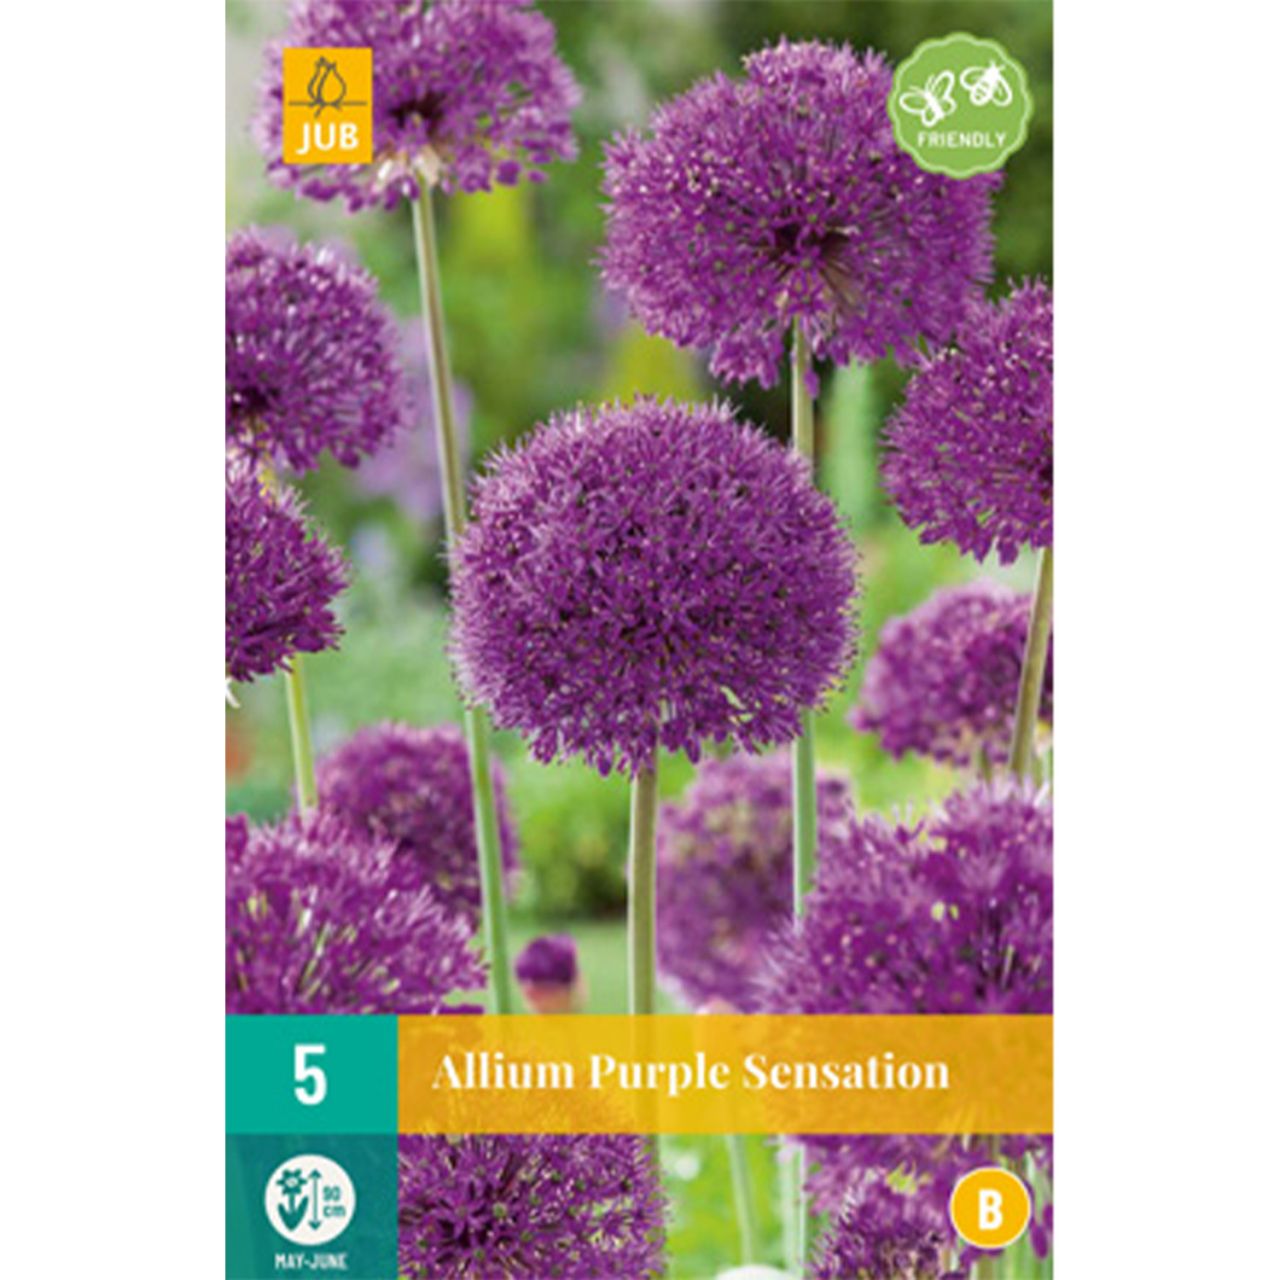 Kategorie <b>Herbst-Blumenzwiebeln </b> - Allium 'Purple Sensation' (Iranlauch) - Allium aflatunense 'Purple Sensation'